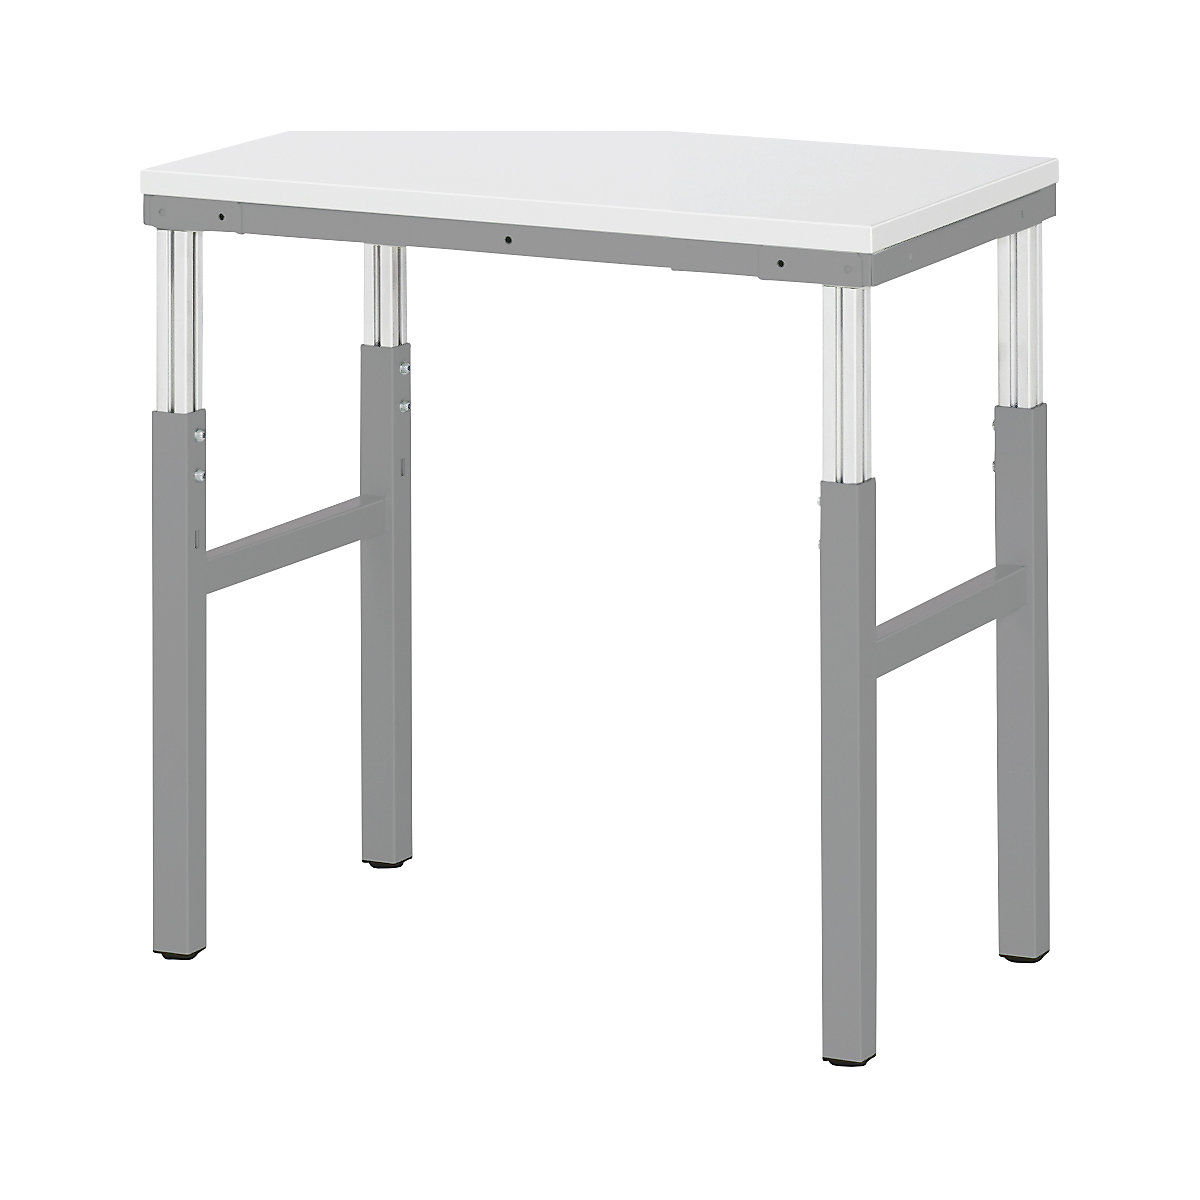 RAU – Pracovní stůl ESD, rozsah přestavování výšky 650 – 1000 mm, š x h 700 x 500 mm